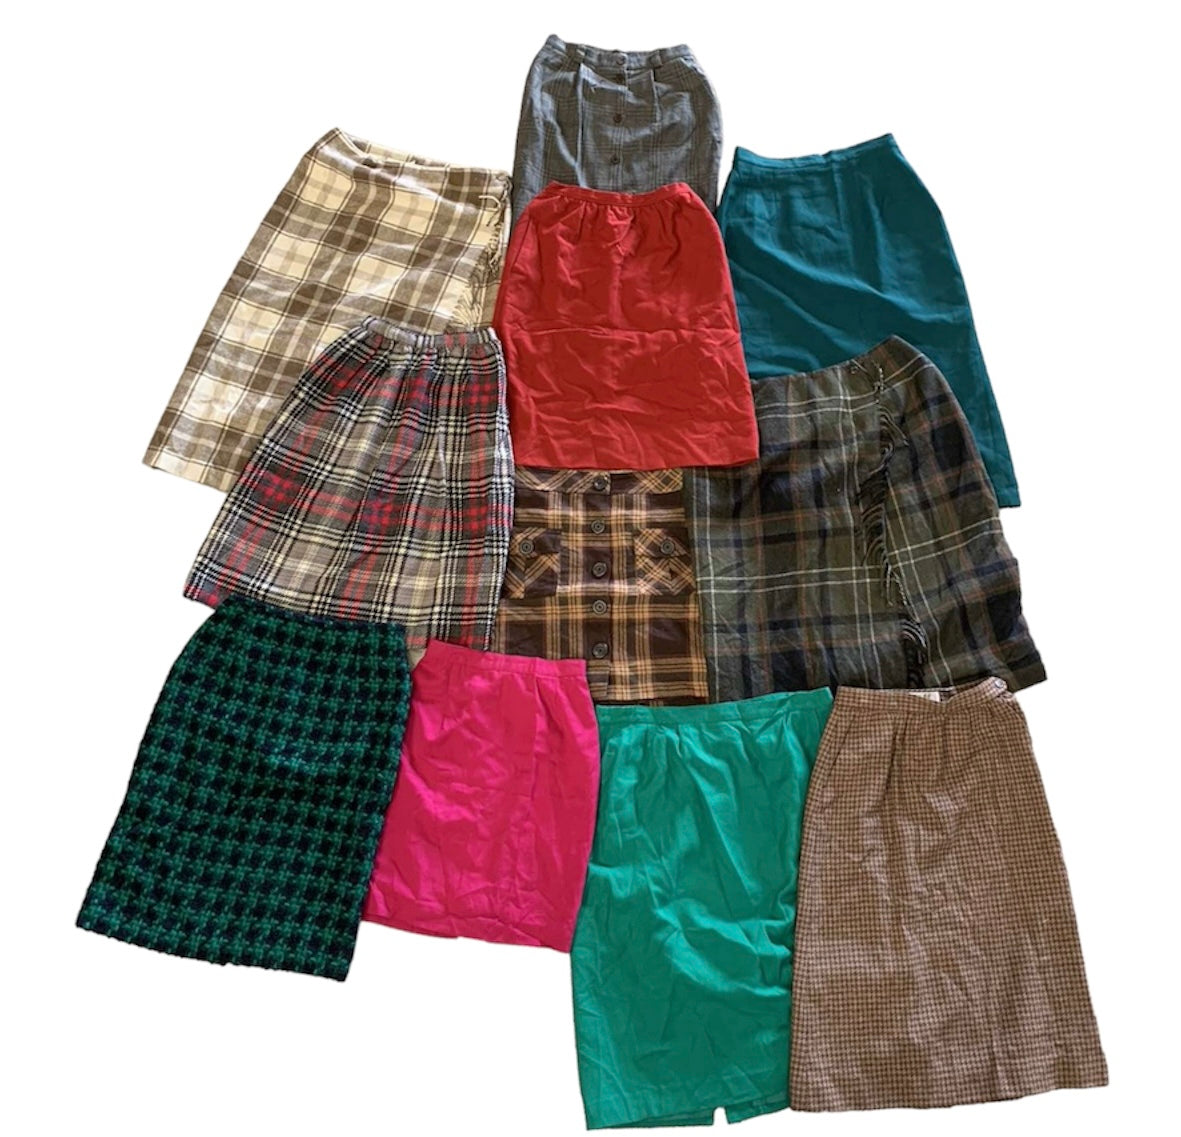 Vintage Pleated Skirt Wholesale